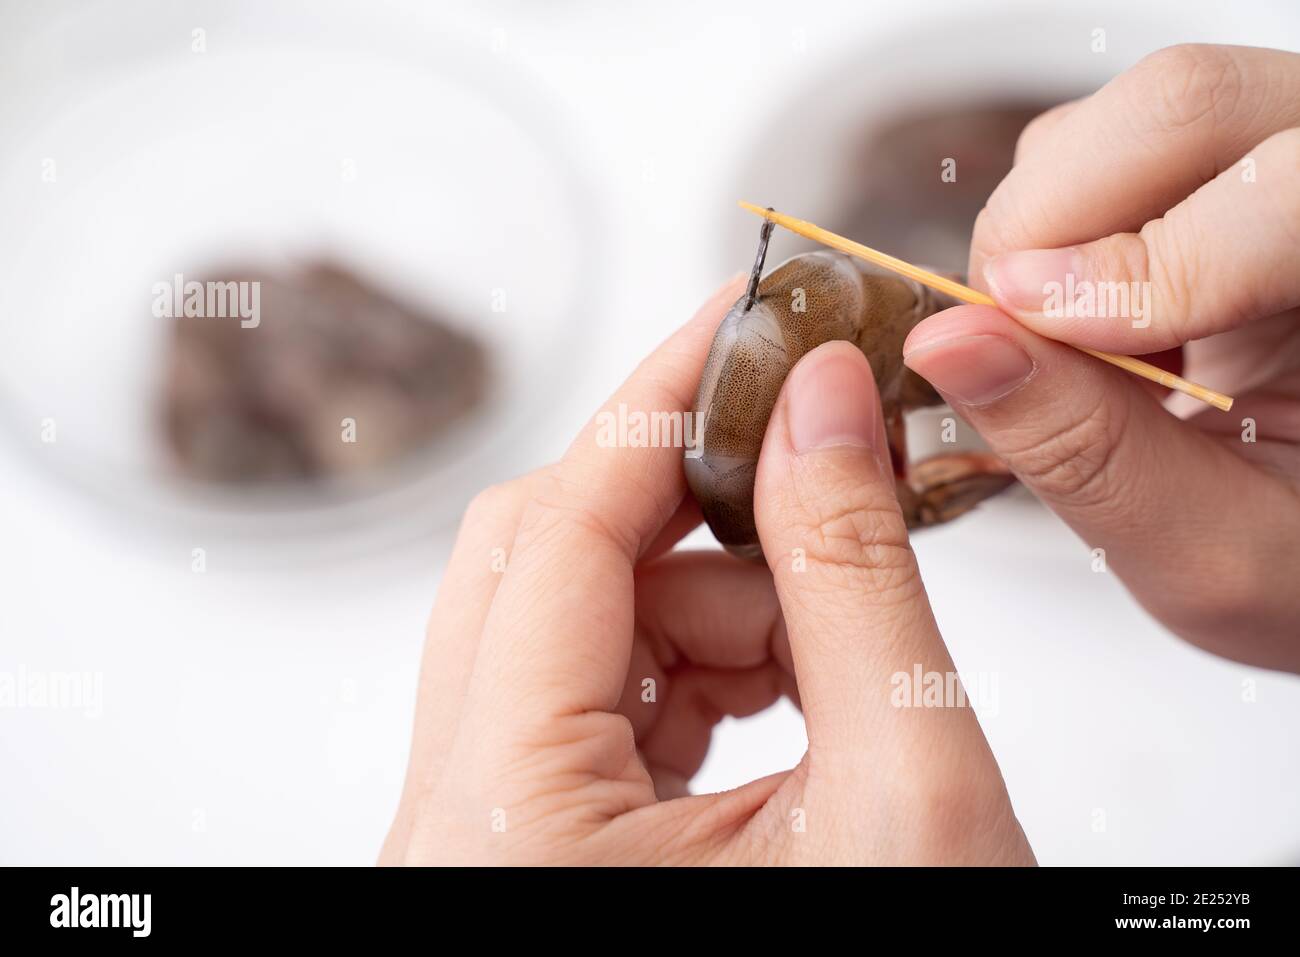 La femme dévore les crevettes et tire la ligne du tractus intestinal lors  de la cuisson des crevettes Photo Stock - Alamy